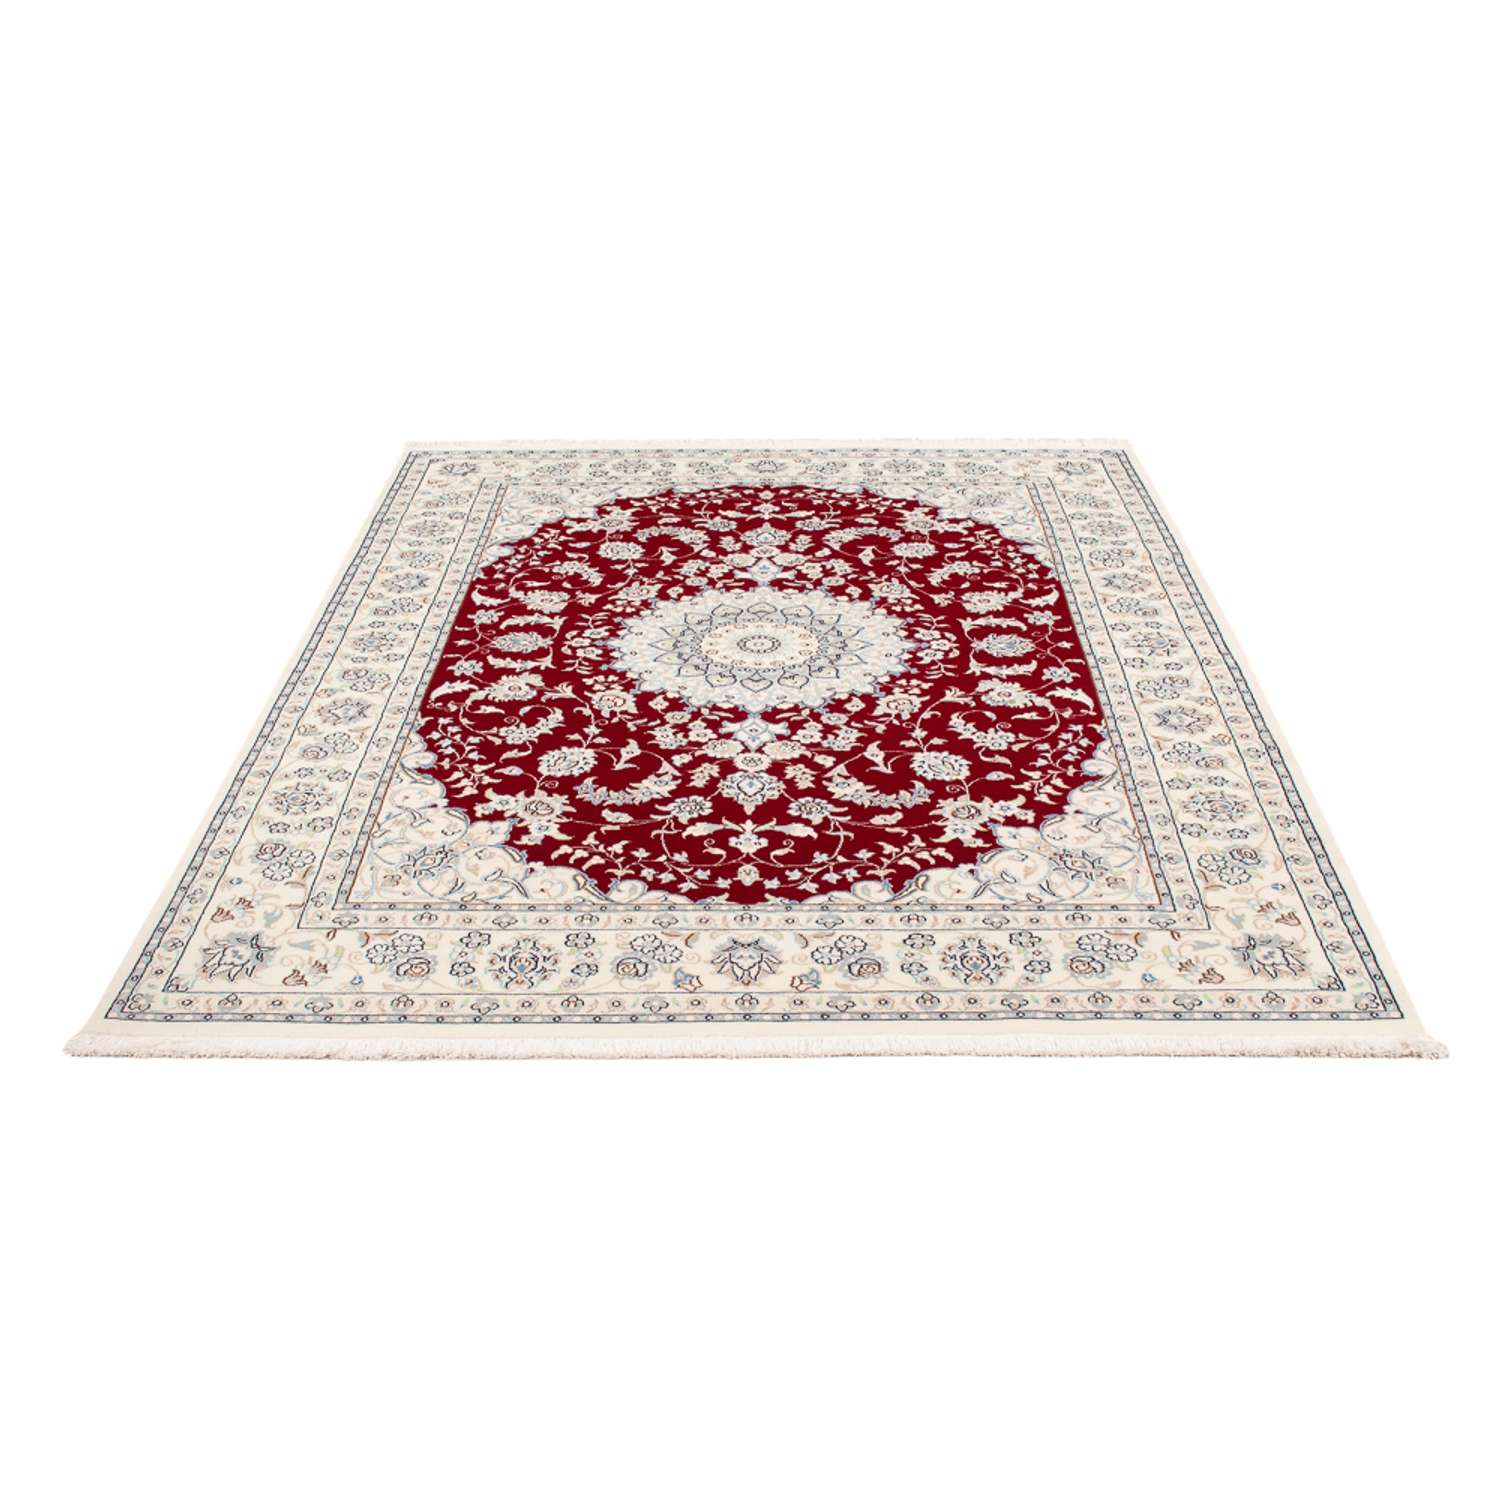 Tapis persan - Nain - Premium - 200 x 146 cm - rouge